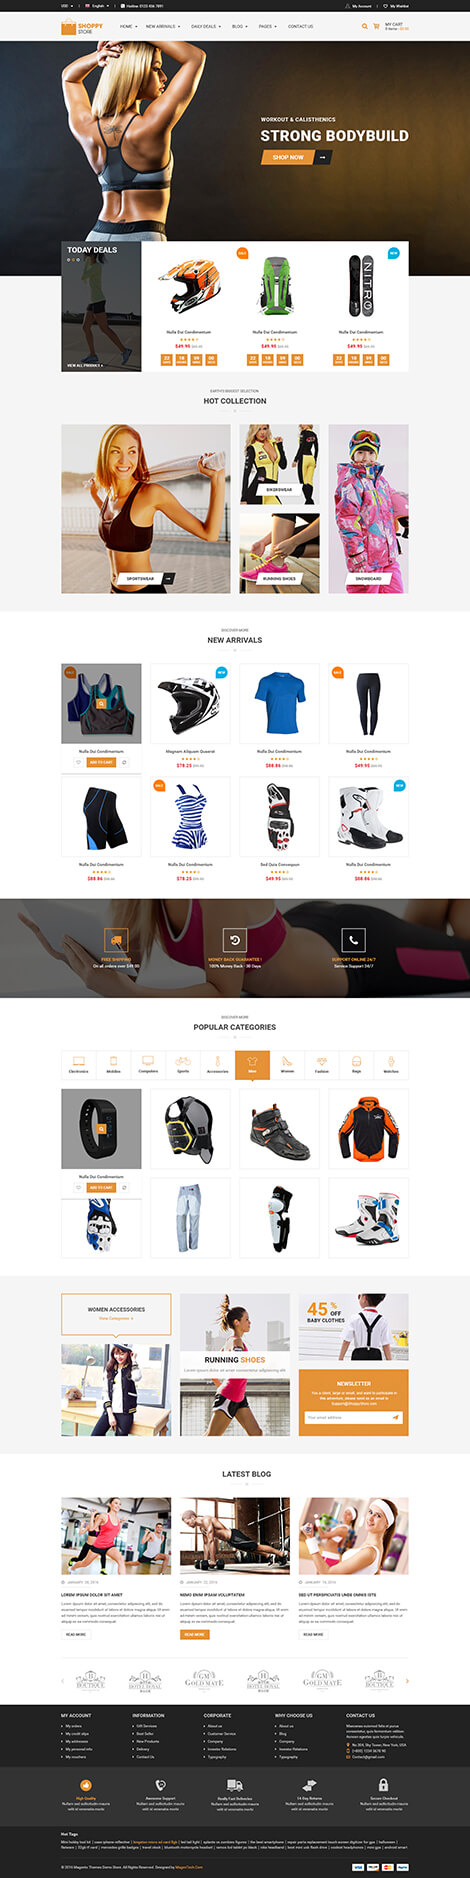 ShoppyStore 8 - Best Responsive Multi Purpose WooCommerce WordPress Theme